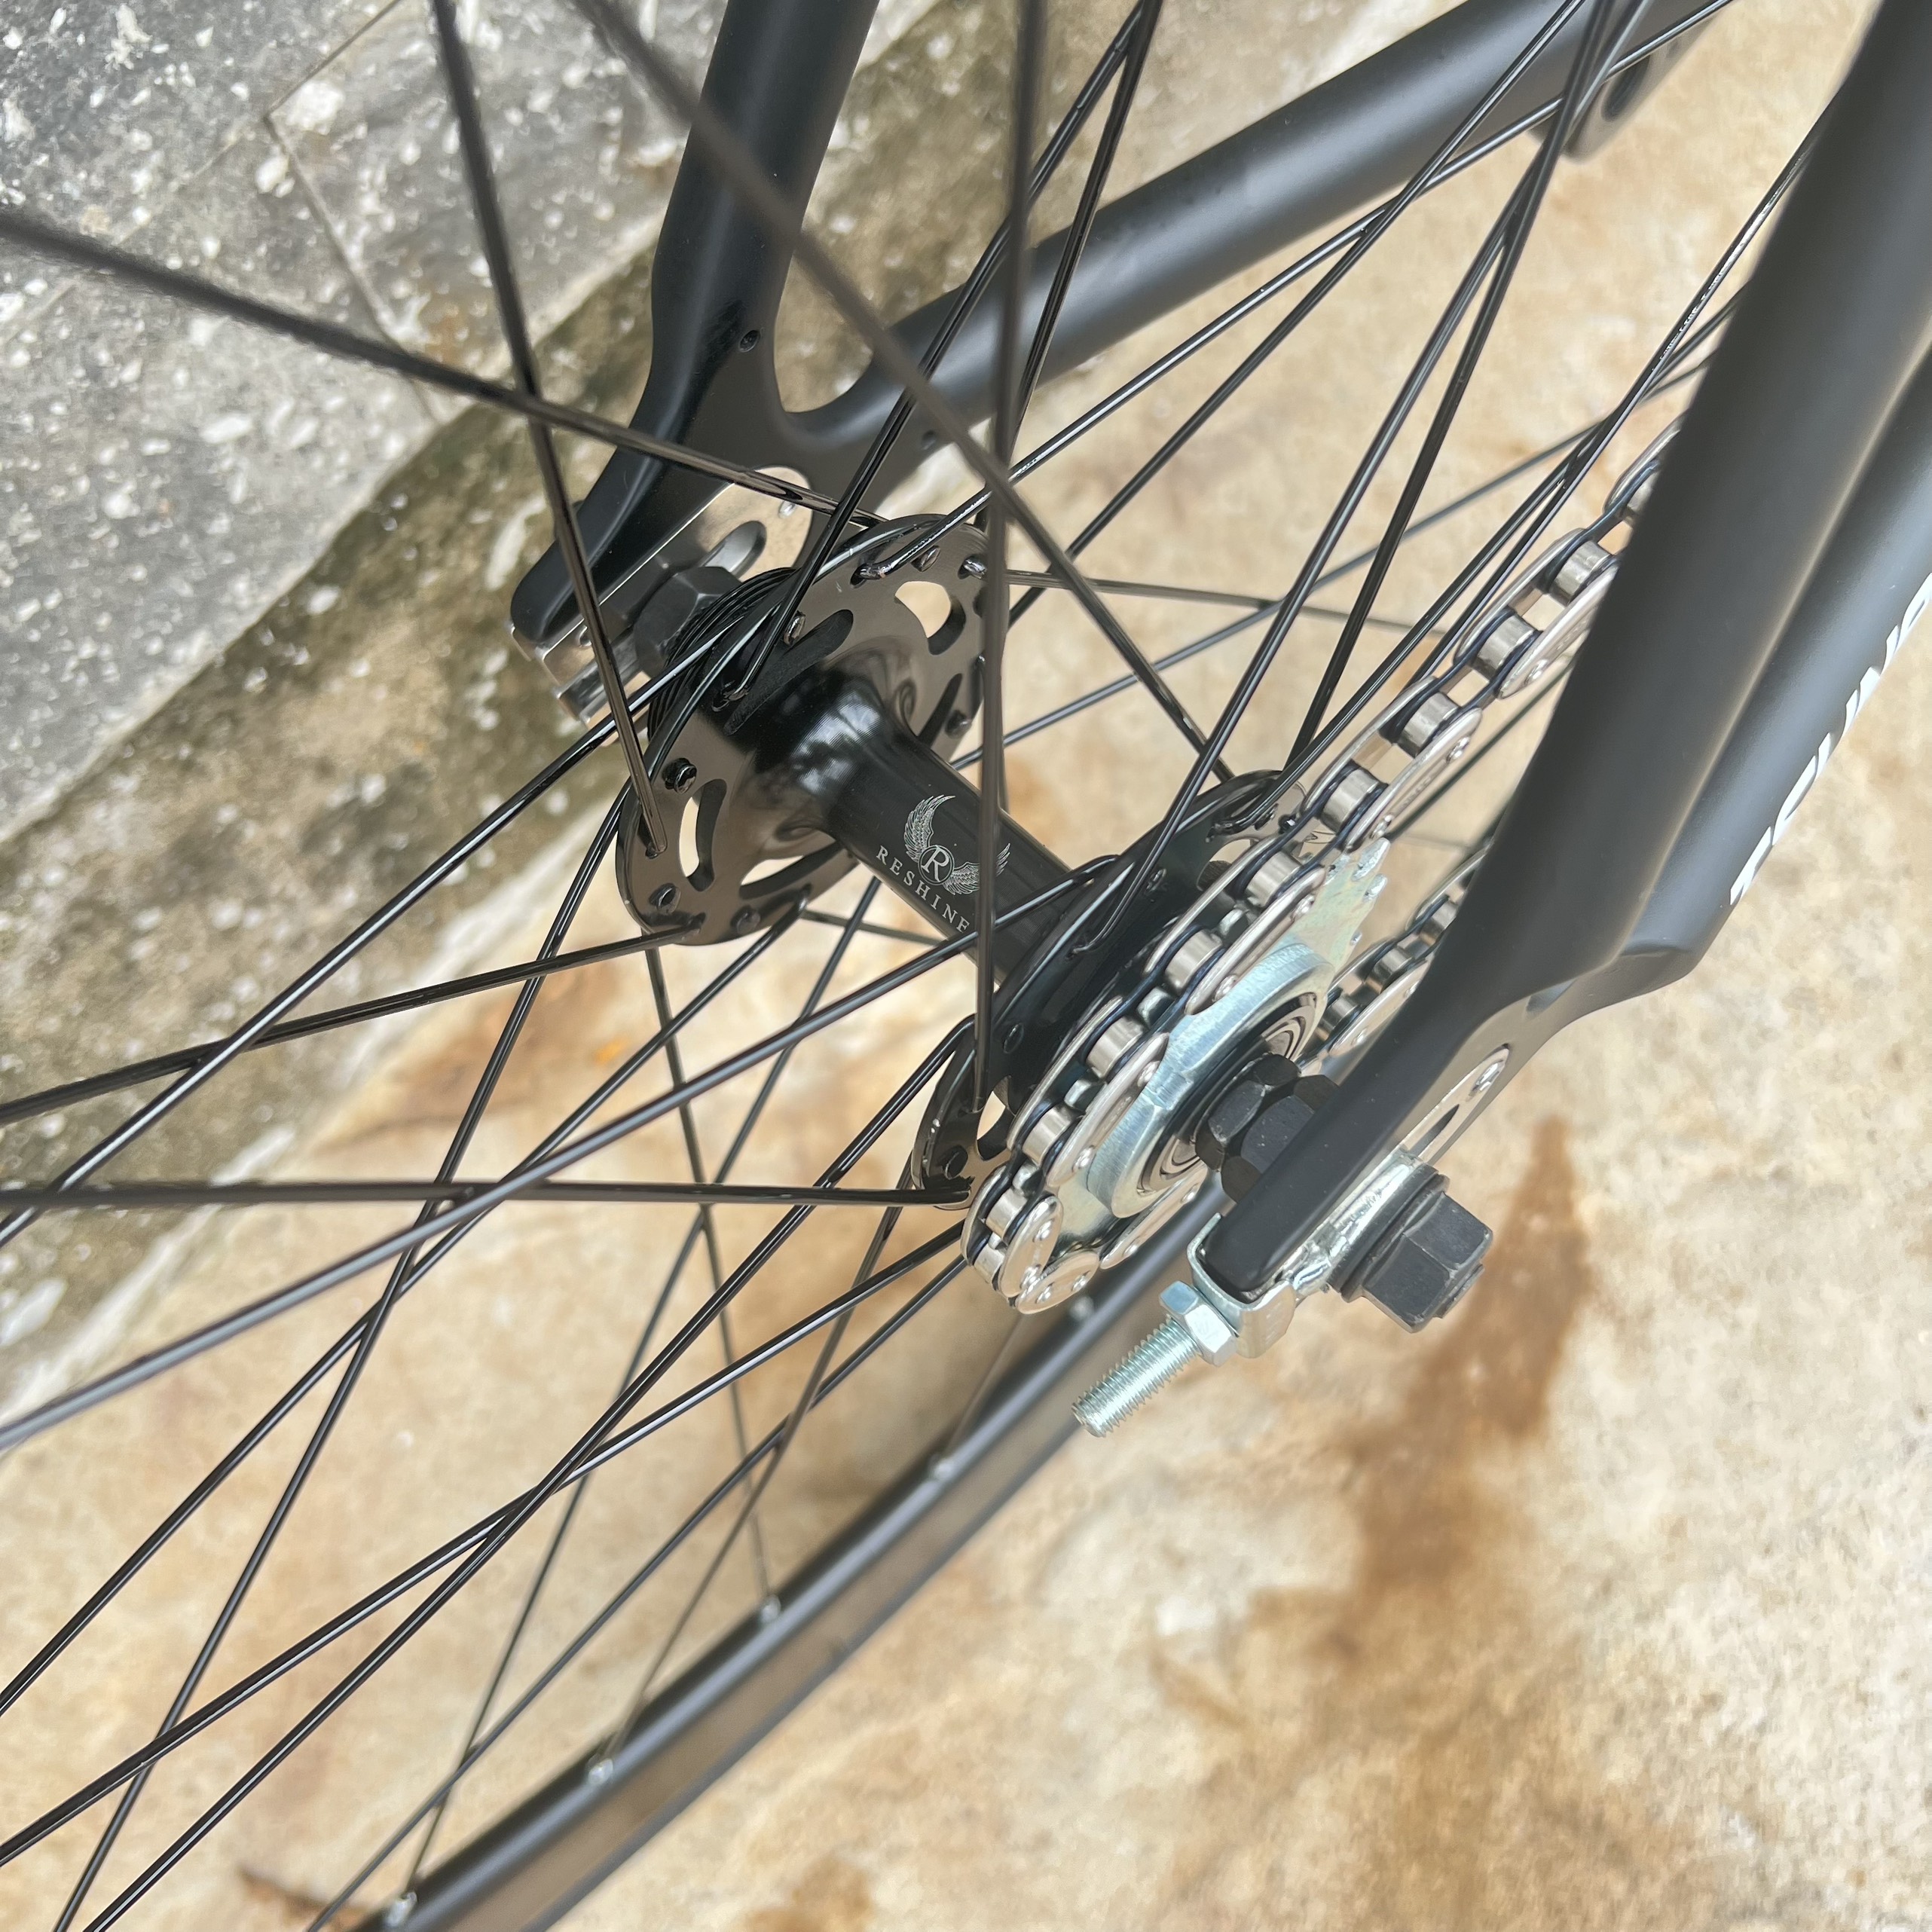 Xe đạp fixed gear TSUNAMI SNM100 nâng cao trước 3 đao đen - Đen chữ trắng